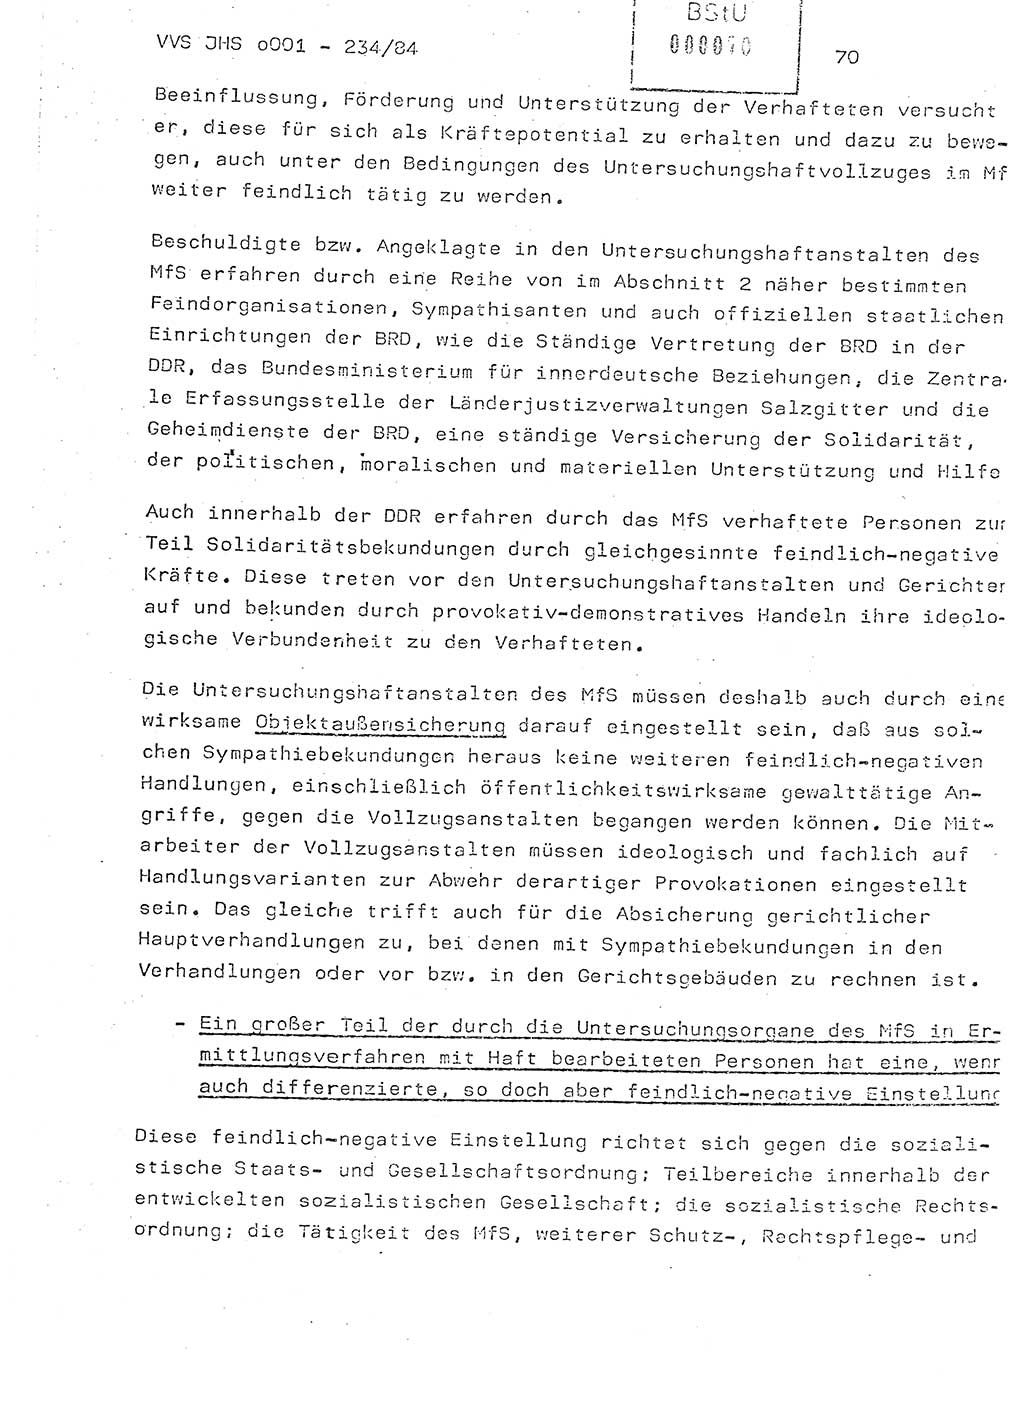 Dissertation Oberst Siegfried Rataizick (Abt. ⅩⅣ), Oberstleutnant Volkmar Heinz (Abt. ⅩⅣ), Oberstleutnant Werner Stein (HA Ⅸ), Hauptmann Heinz Conrad (JHS), Ministerium für Staatssicherheit (MfS) [Deutsche Demokratische Republik (DDR)], Juristische Hochschule (JHS), Vertrauliche Verschlußsache (VVS) o001-234/84, Potsdam 1984, Seite 70 (Diss. MfS DDR JHS VVS o001-234/84 1984, S. 70)